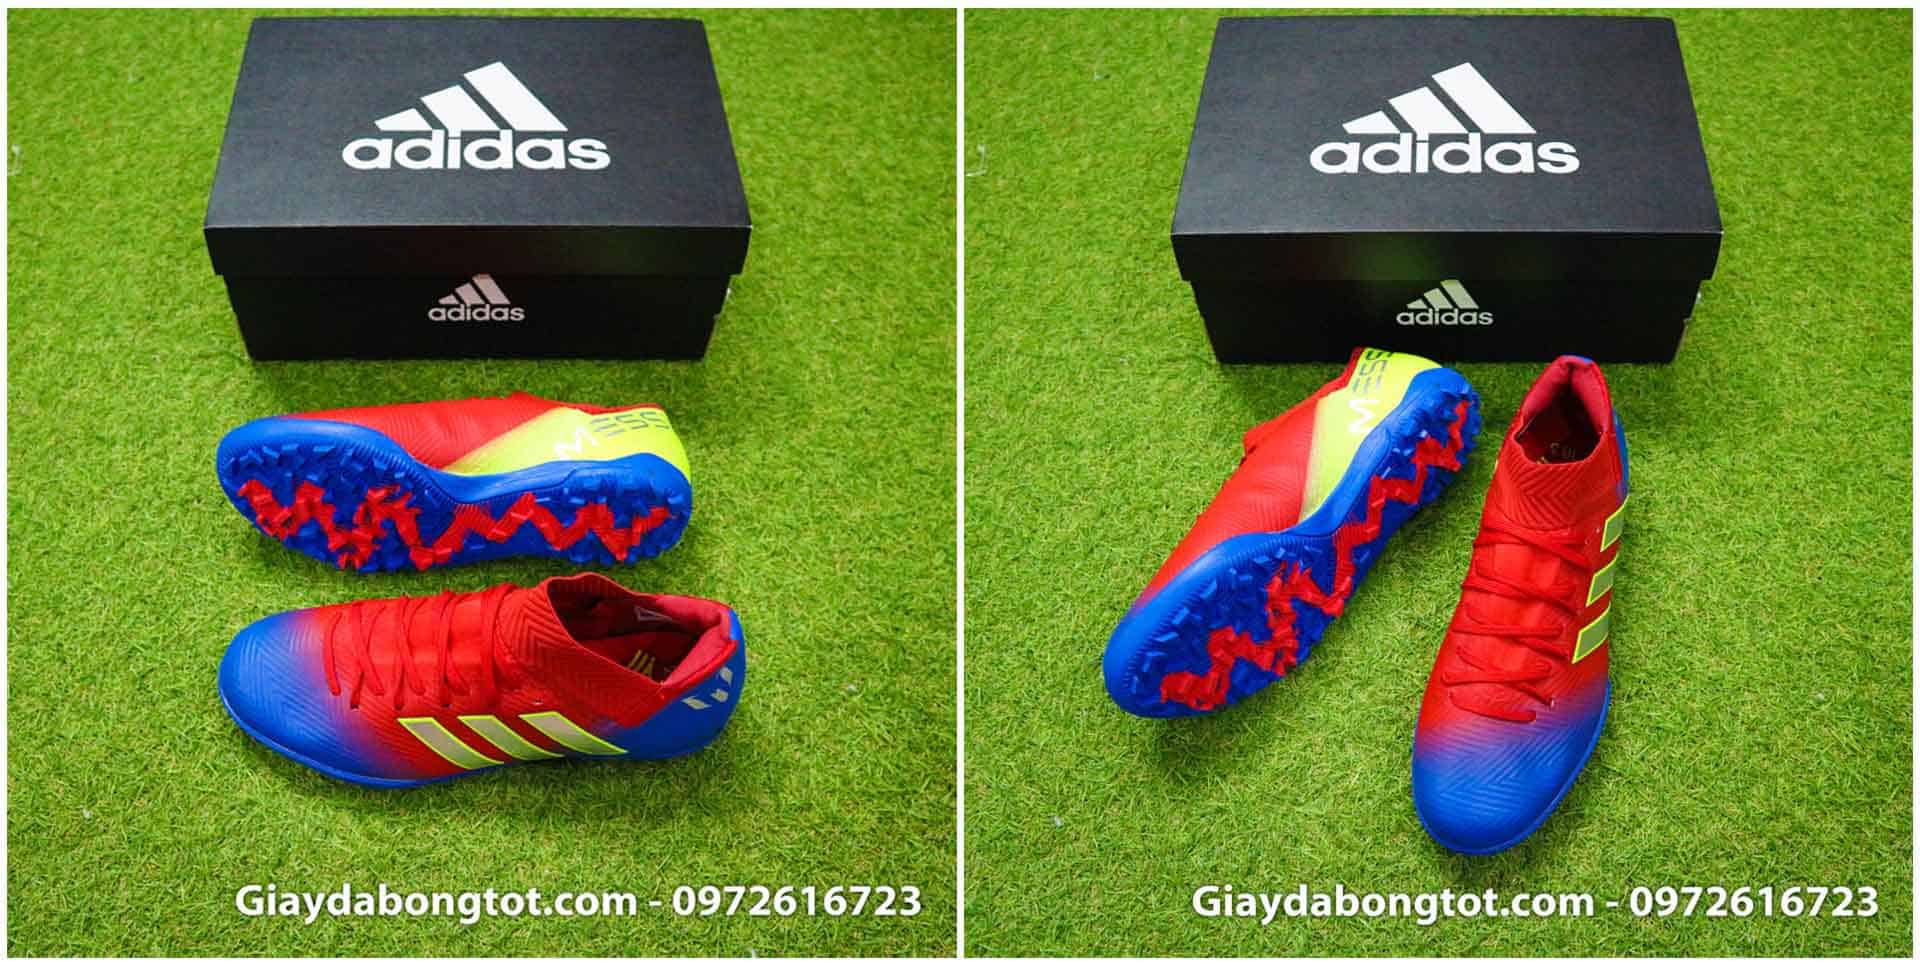 Giày đá bóng sân cỏ nhân tạo Adidas Nemeziz Superfake có mức giá 480k mang lại sự ôm chân, thật chân rất tốt